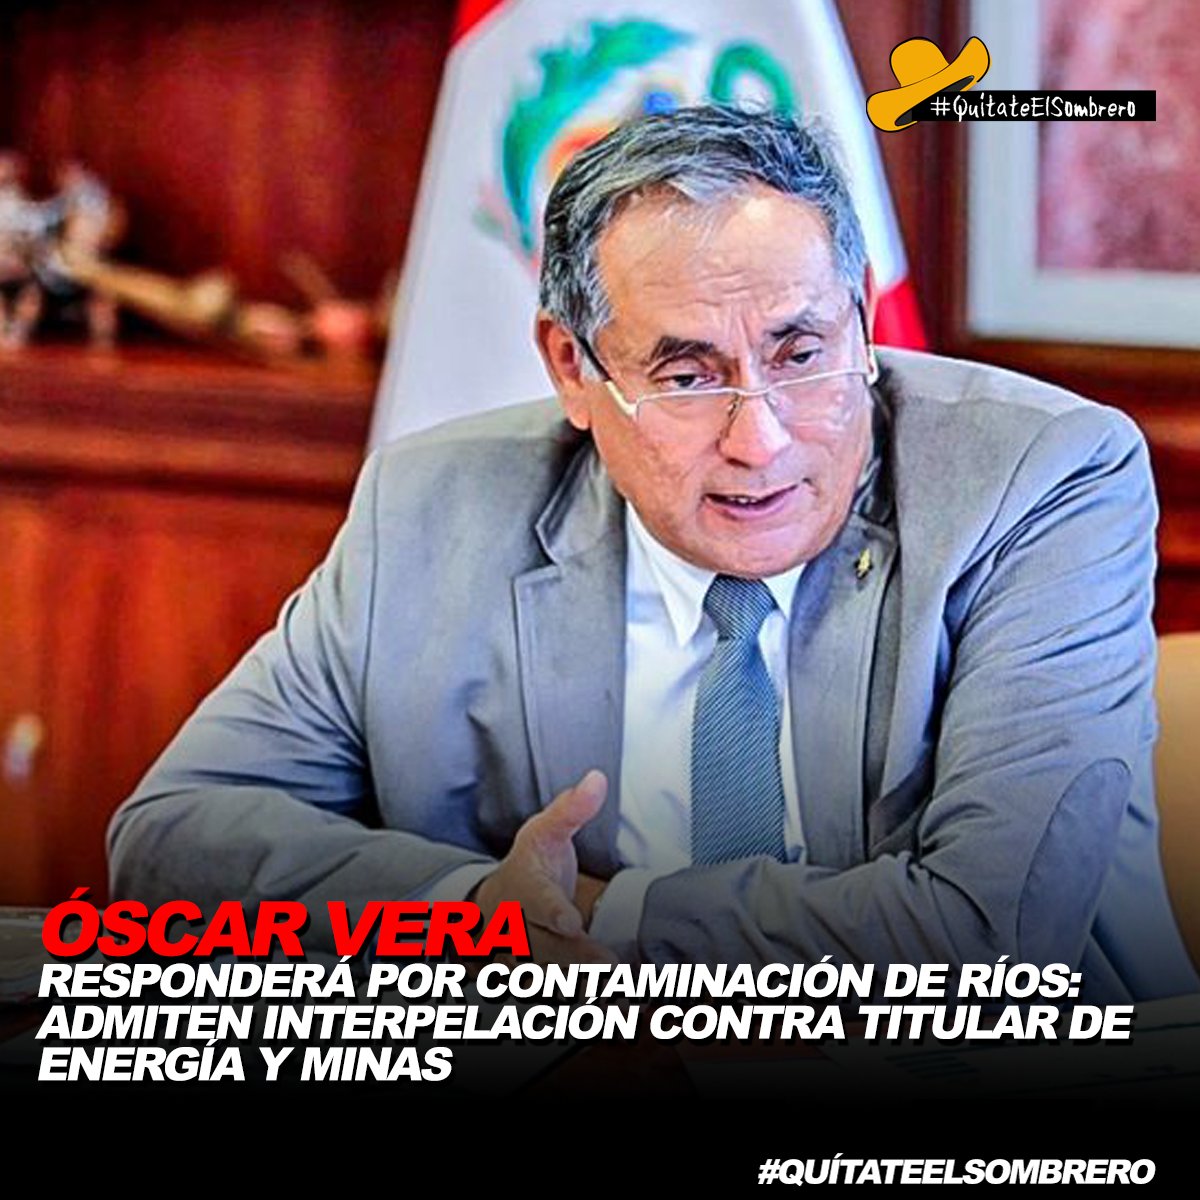 Por segunda vez, el ministro de Energía y Minas, Óscar Vera, asistirá al Congreso, pero ahora para responder por la contaminación de los ríos Llallimayo, Jatun Ayllu y Chacapalca, en Puno. Esto se da luego de aprobarse por mayoría la admisión de la moción de interpelación.